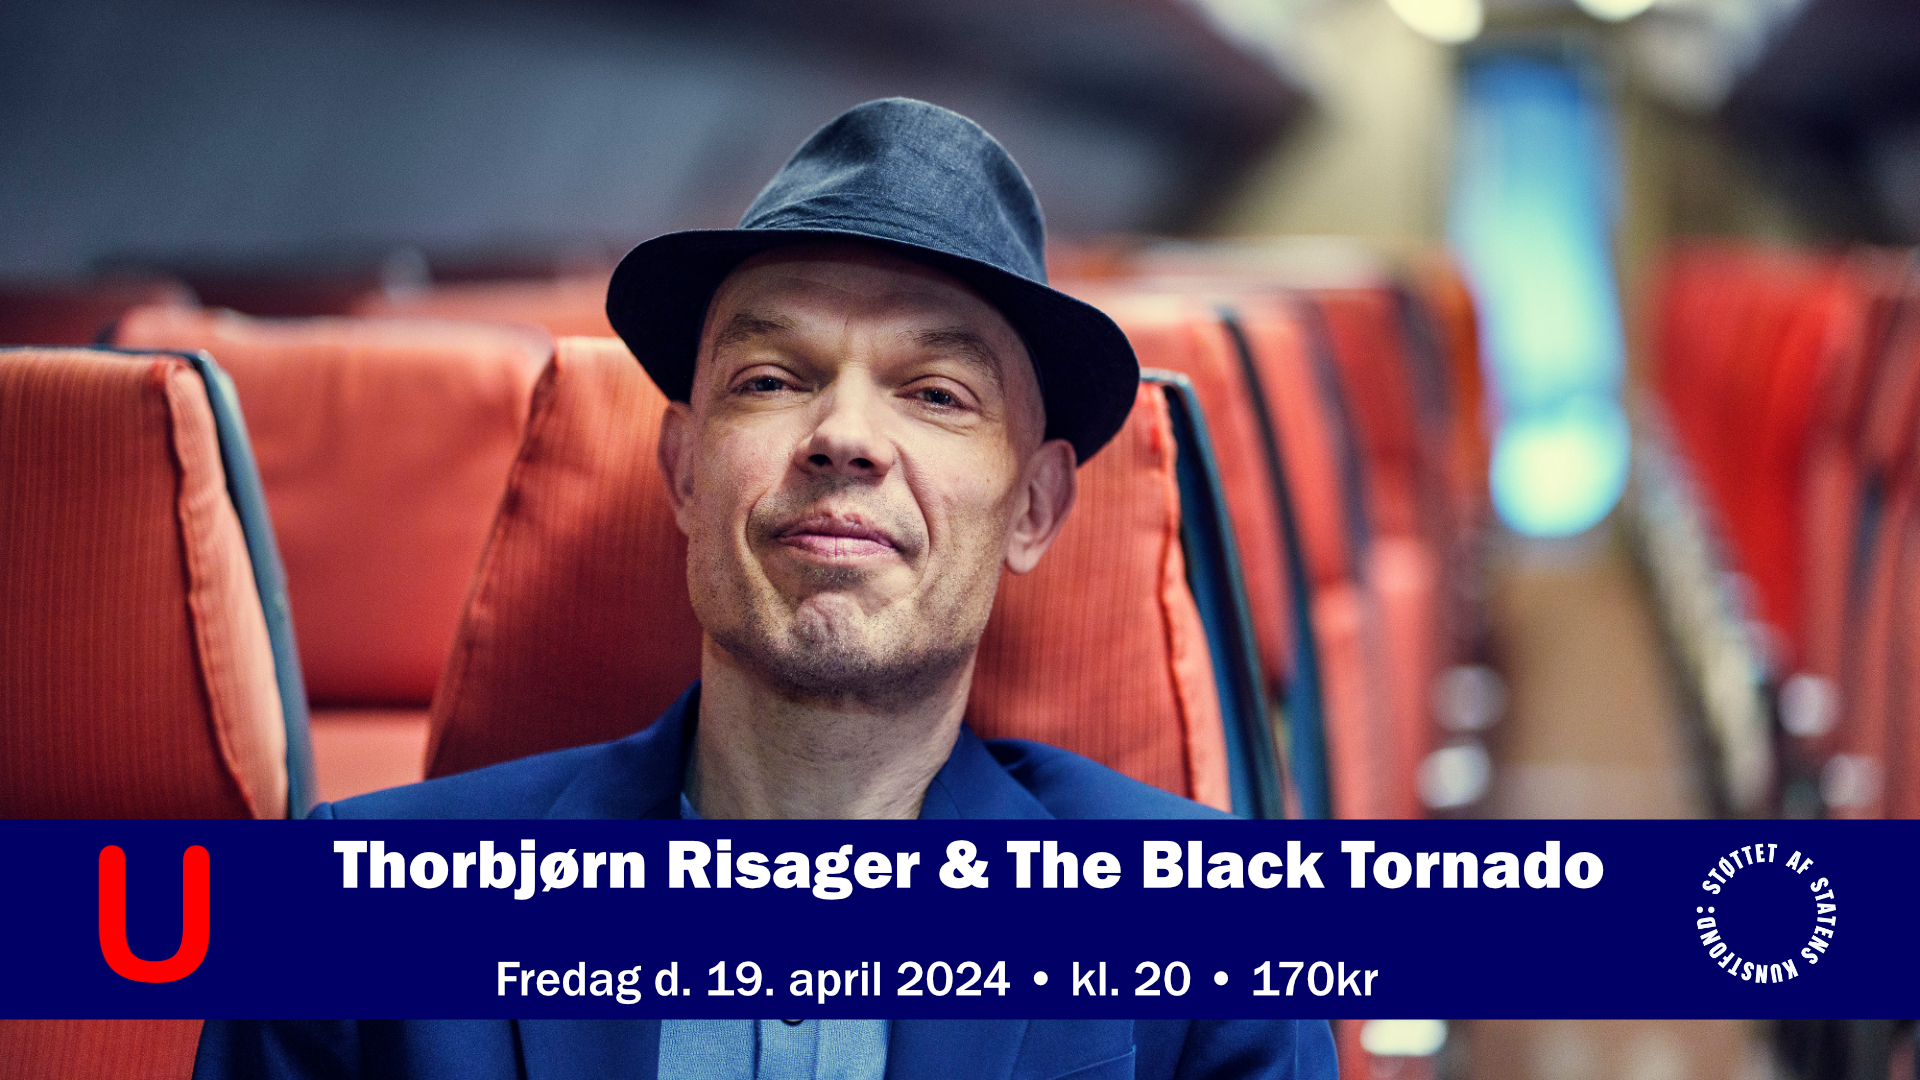 Thorbjørn Risager & The Black Tornado